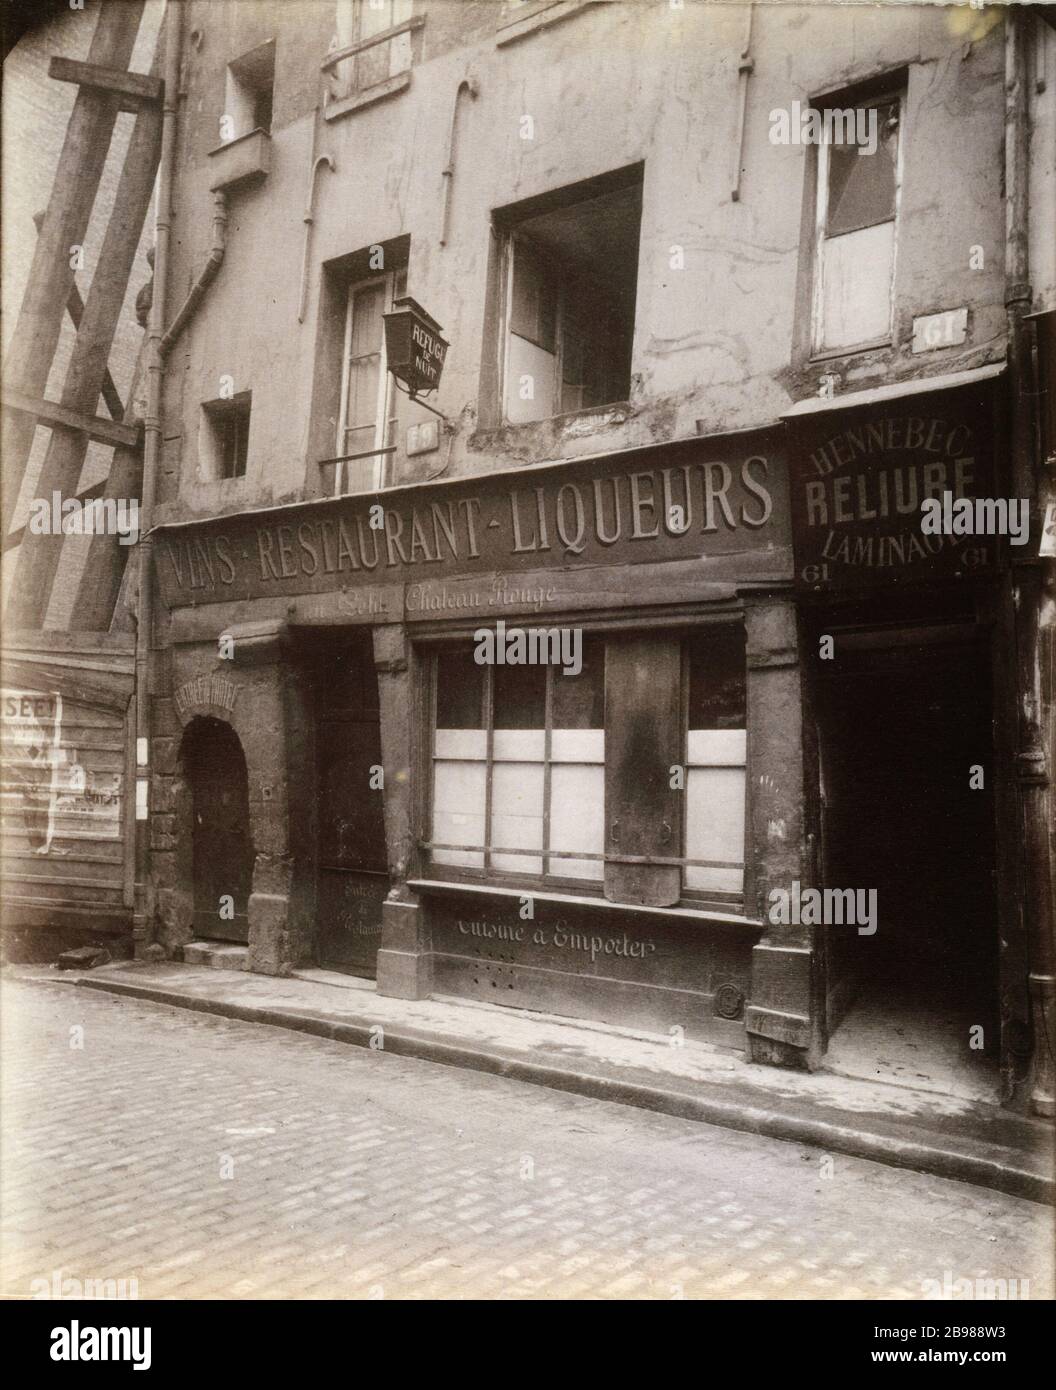 61 GALANDE STREET MOVES SMALL RED CASTLE '61, rue Galande, bouge du Petit Château Rouge (démoli)', Paris (Vème arr.). Photographie d'Eugène Atget (1857-1927). Paris, musée Carnavalet. Stock Photo